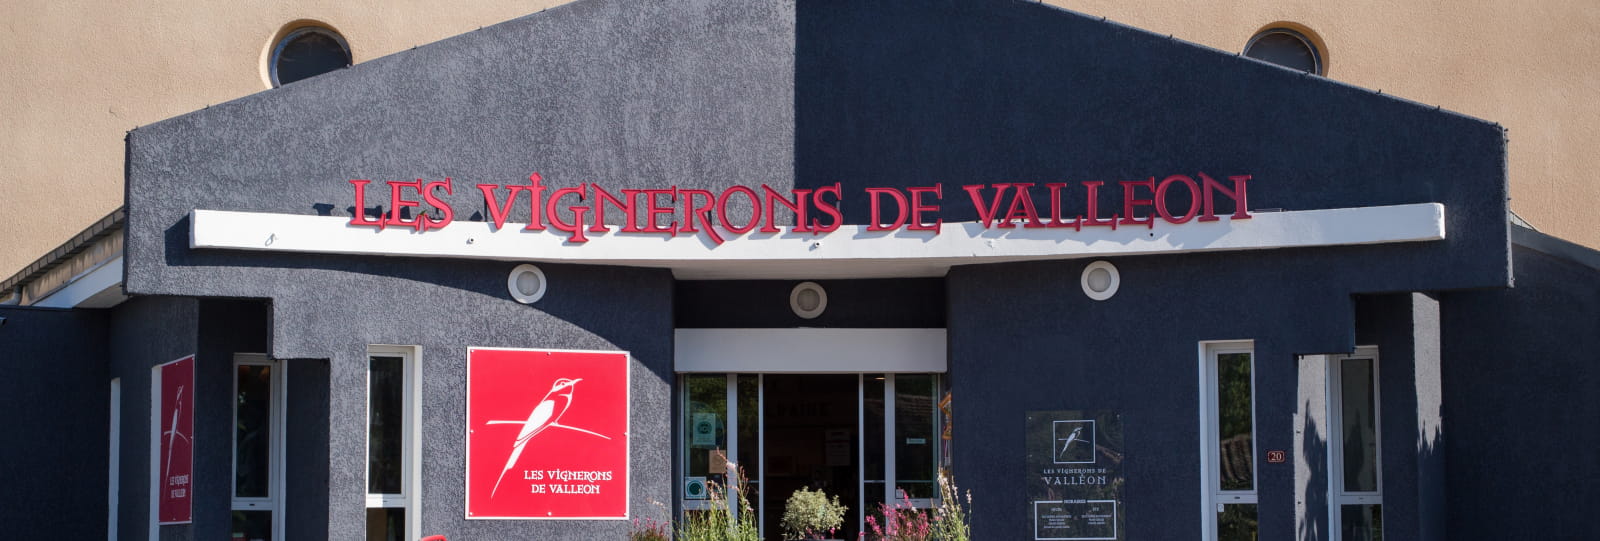 Les Vignerons de Valléon - Caveau de St Gervais sur Roubion